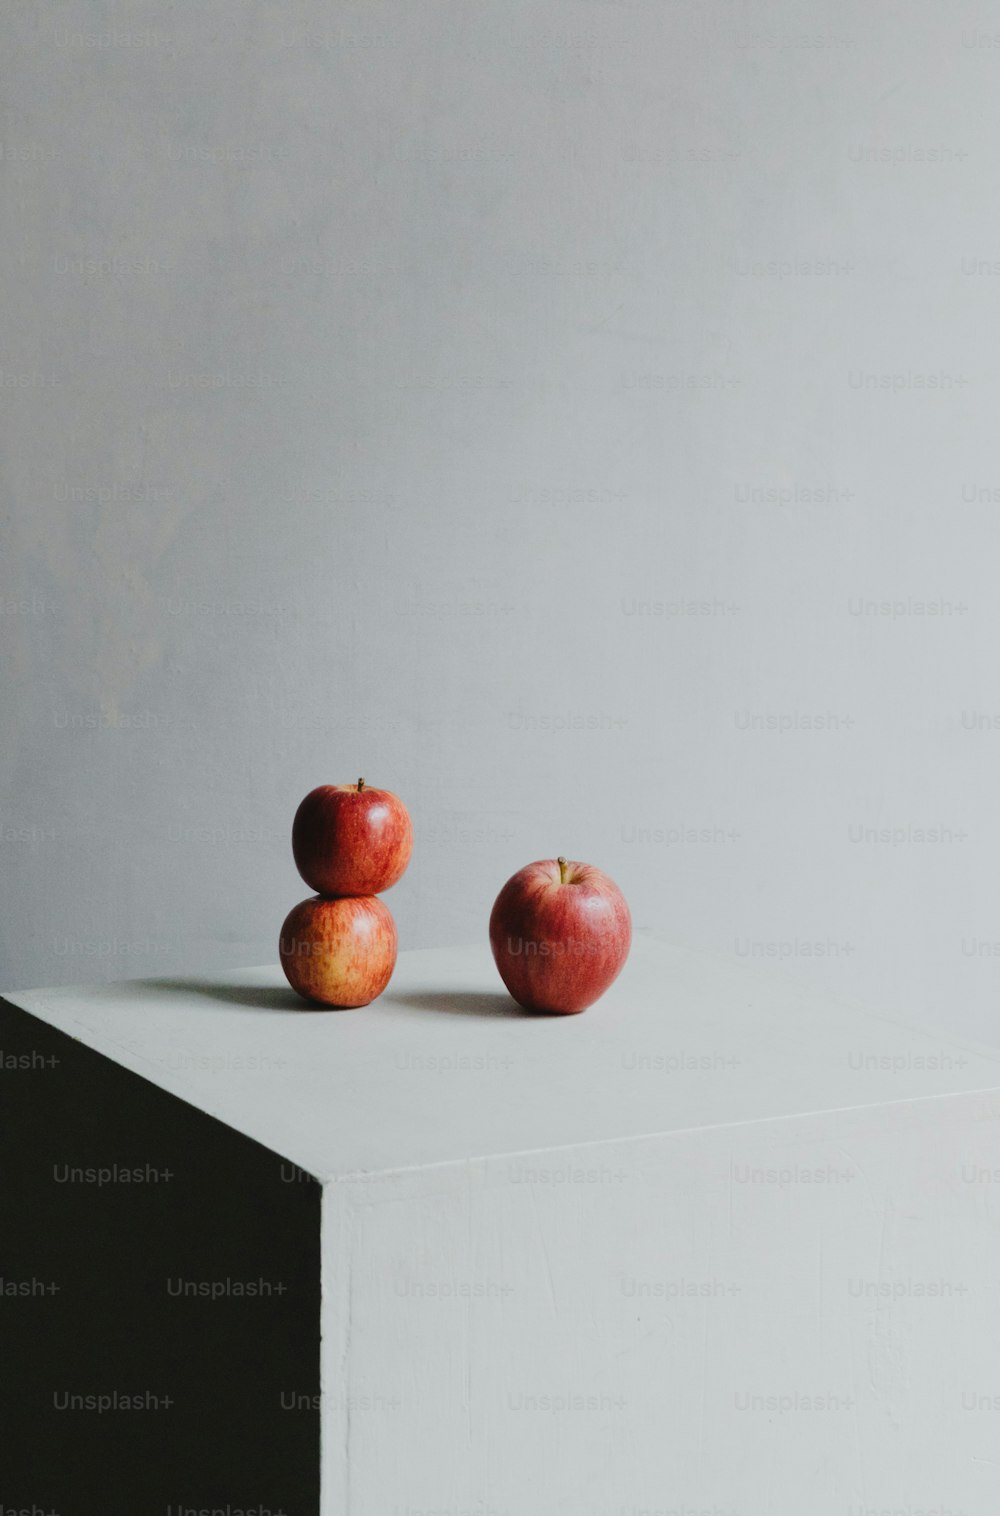 Dos manzanas sentadas encima de una superficie blanca